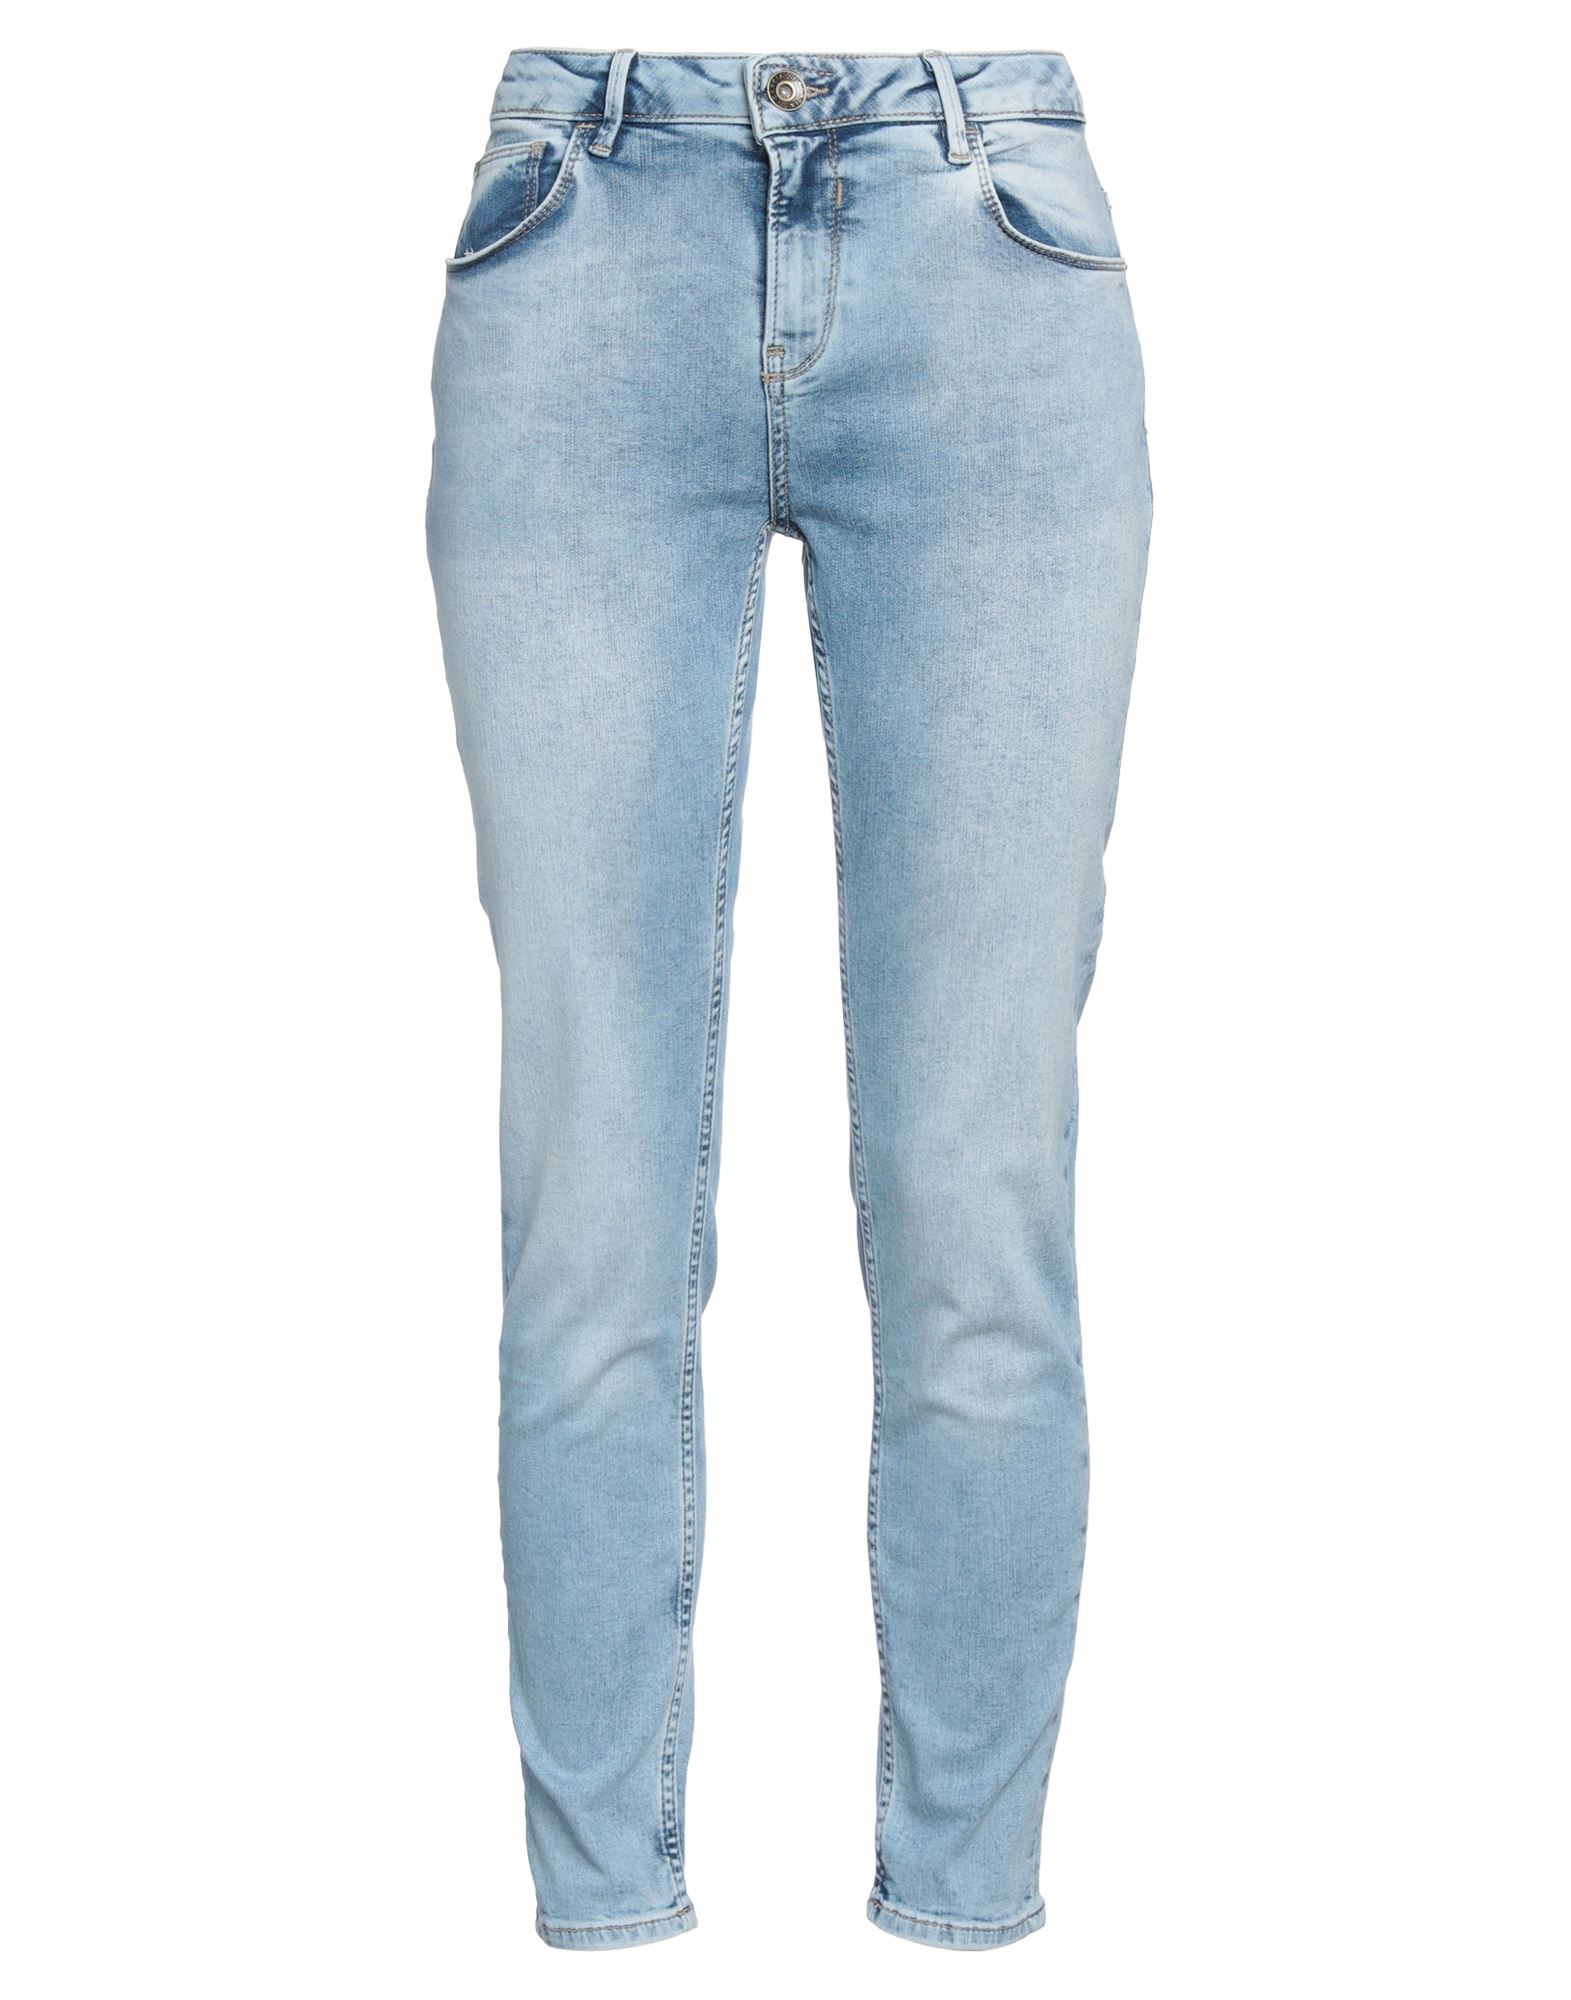 Garcia Woman Jeans Blue Size 31w-28l Cotton, Polyacrylic, Elastane